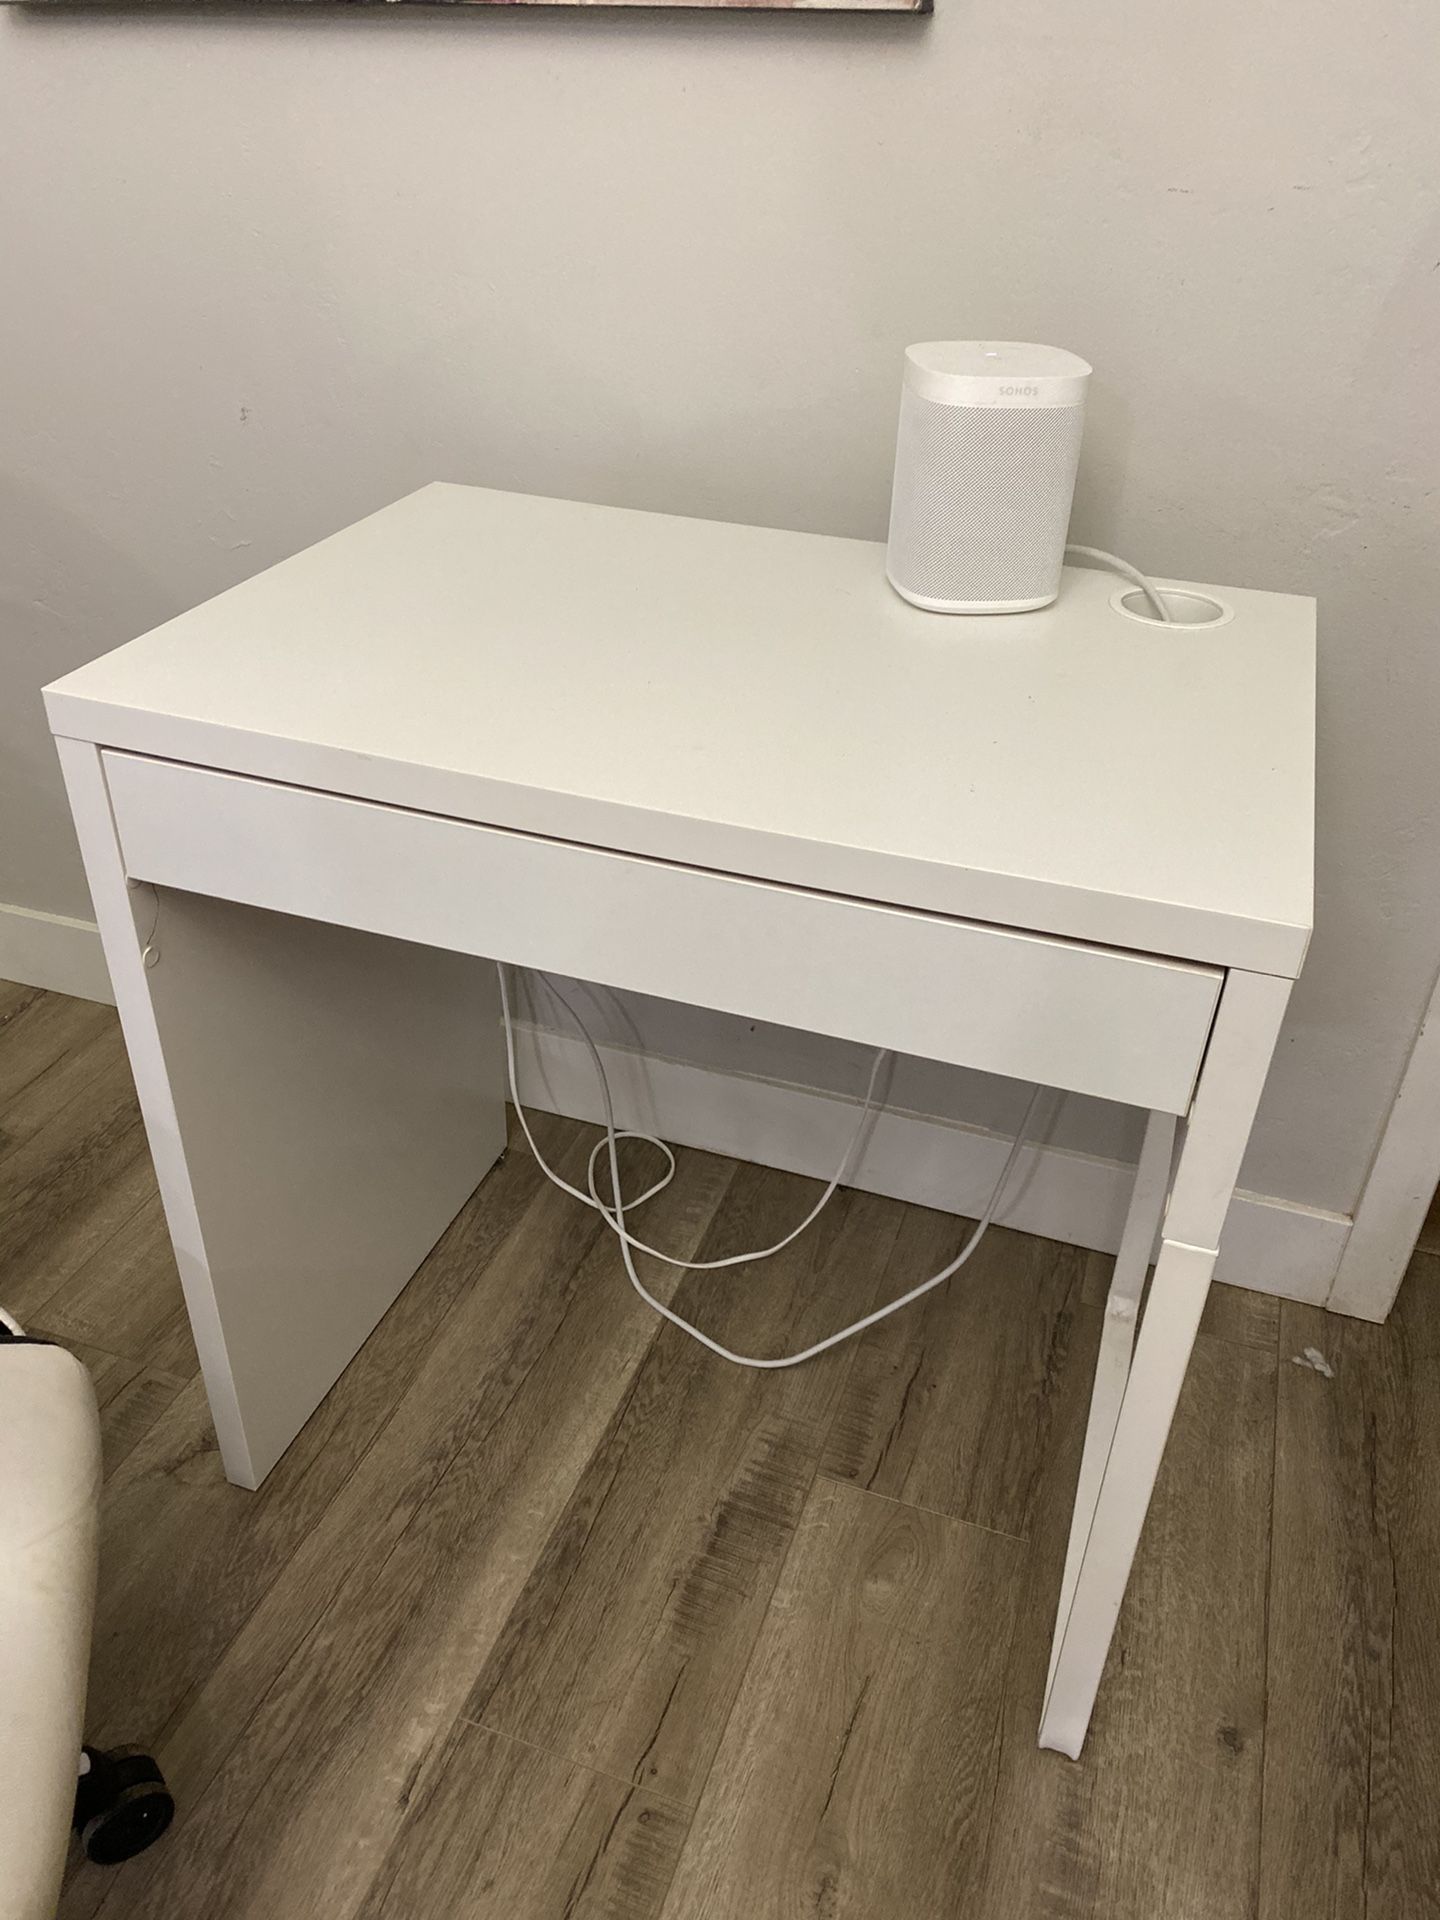 Mini desk